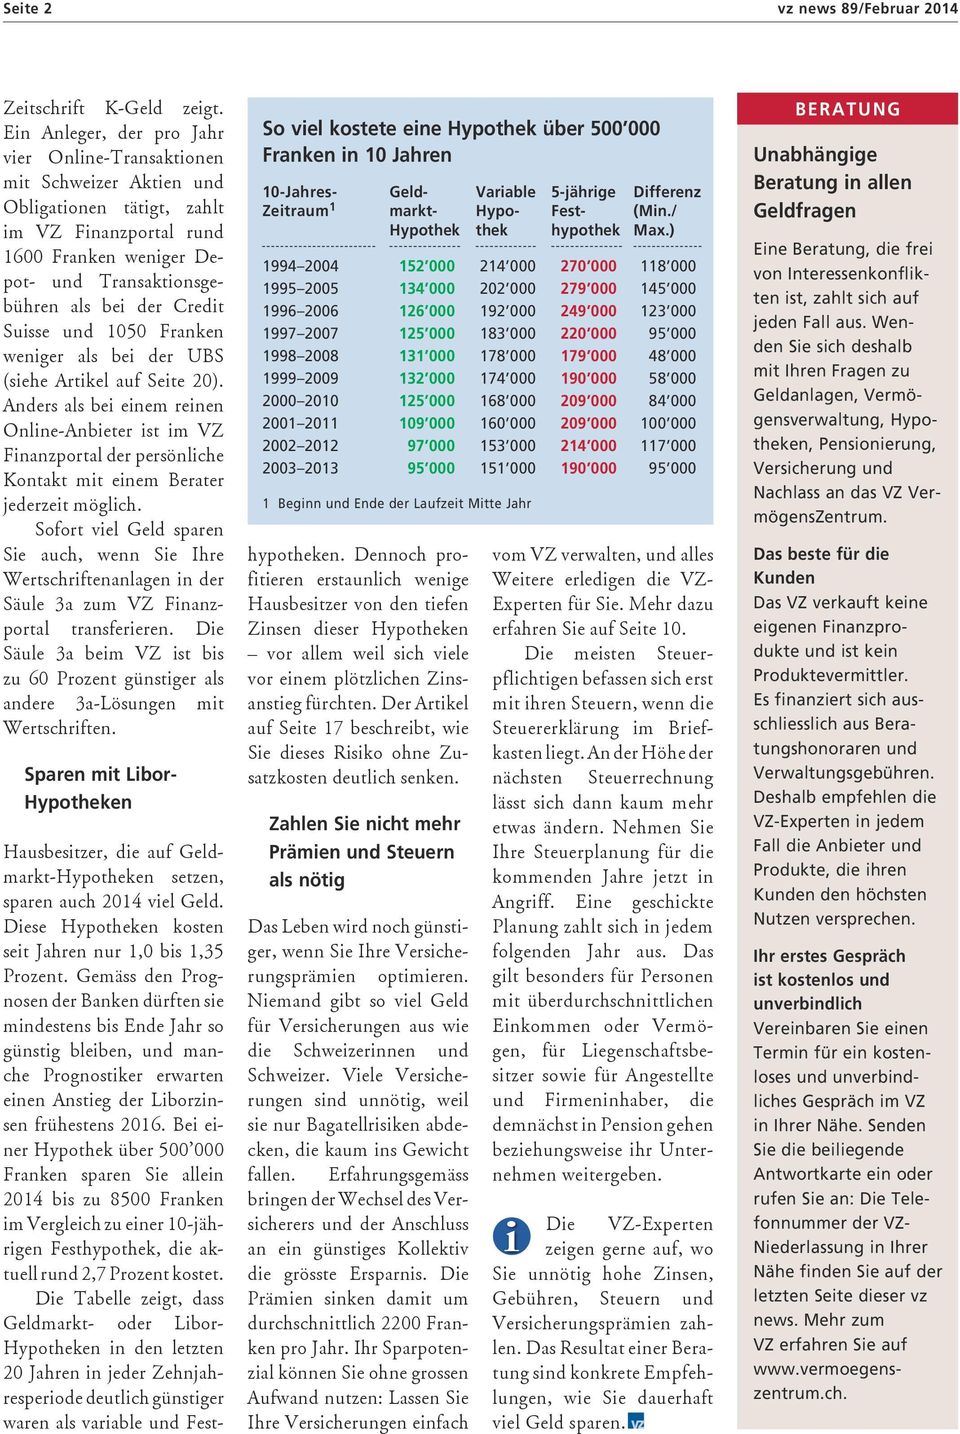 Suisse und 1050 Franken weniger als bei der UBS (siehe Artikel auf Seite 20).